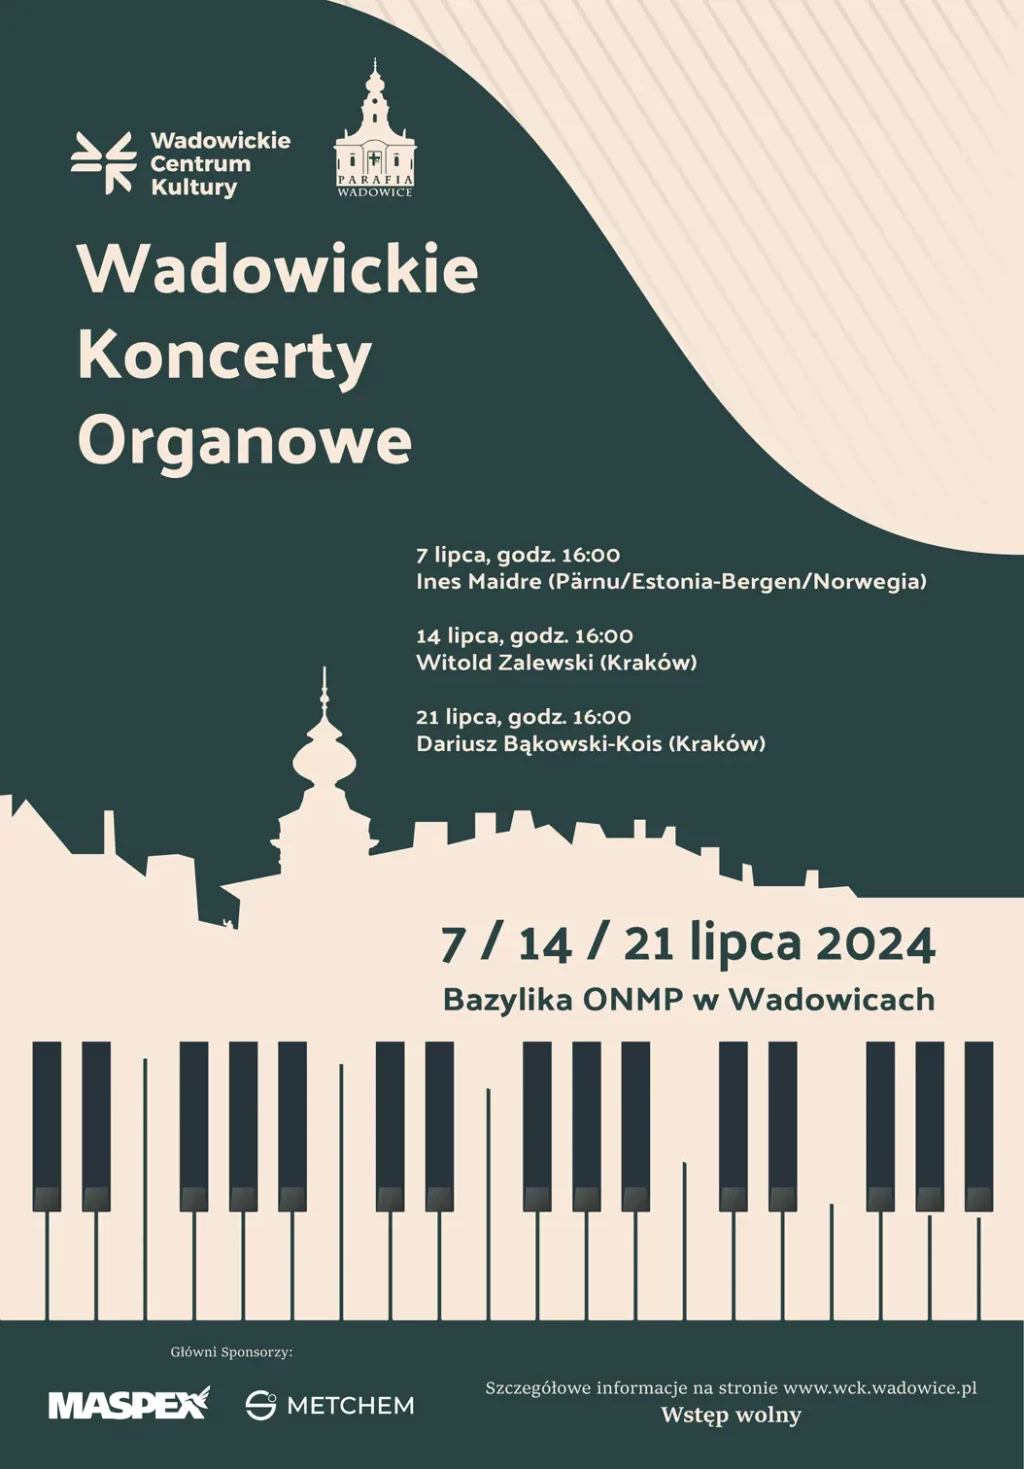 Wadowickie Koncerty Organowe – Dariusz Bąkowski-Kois